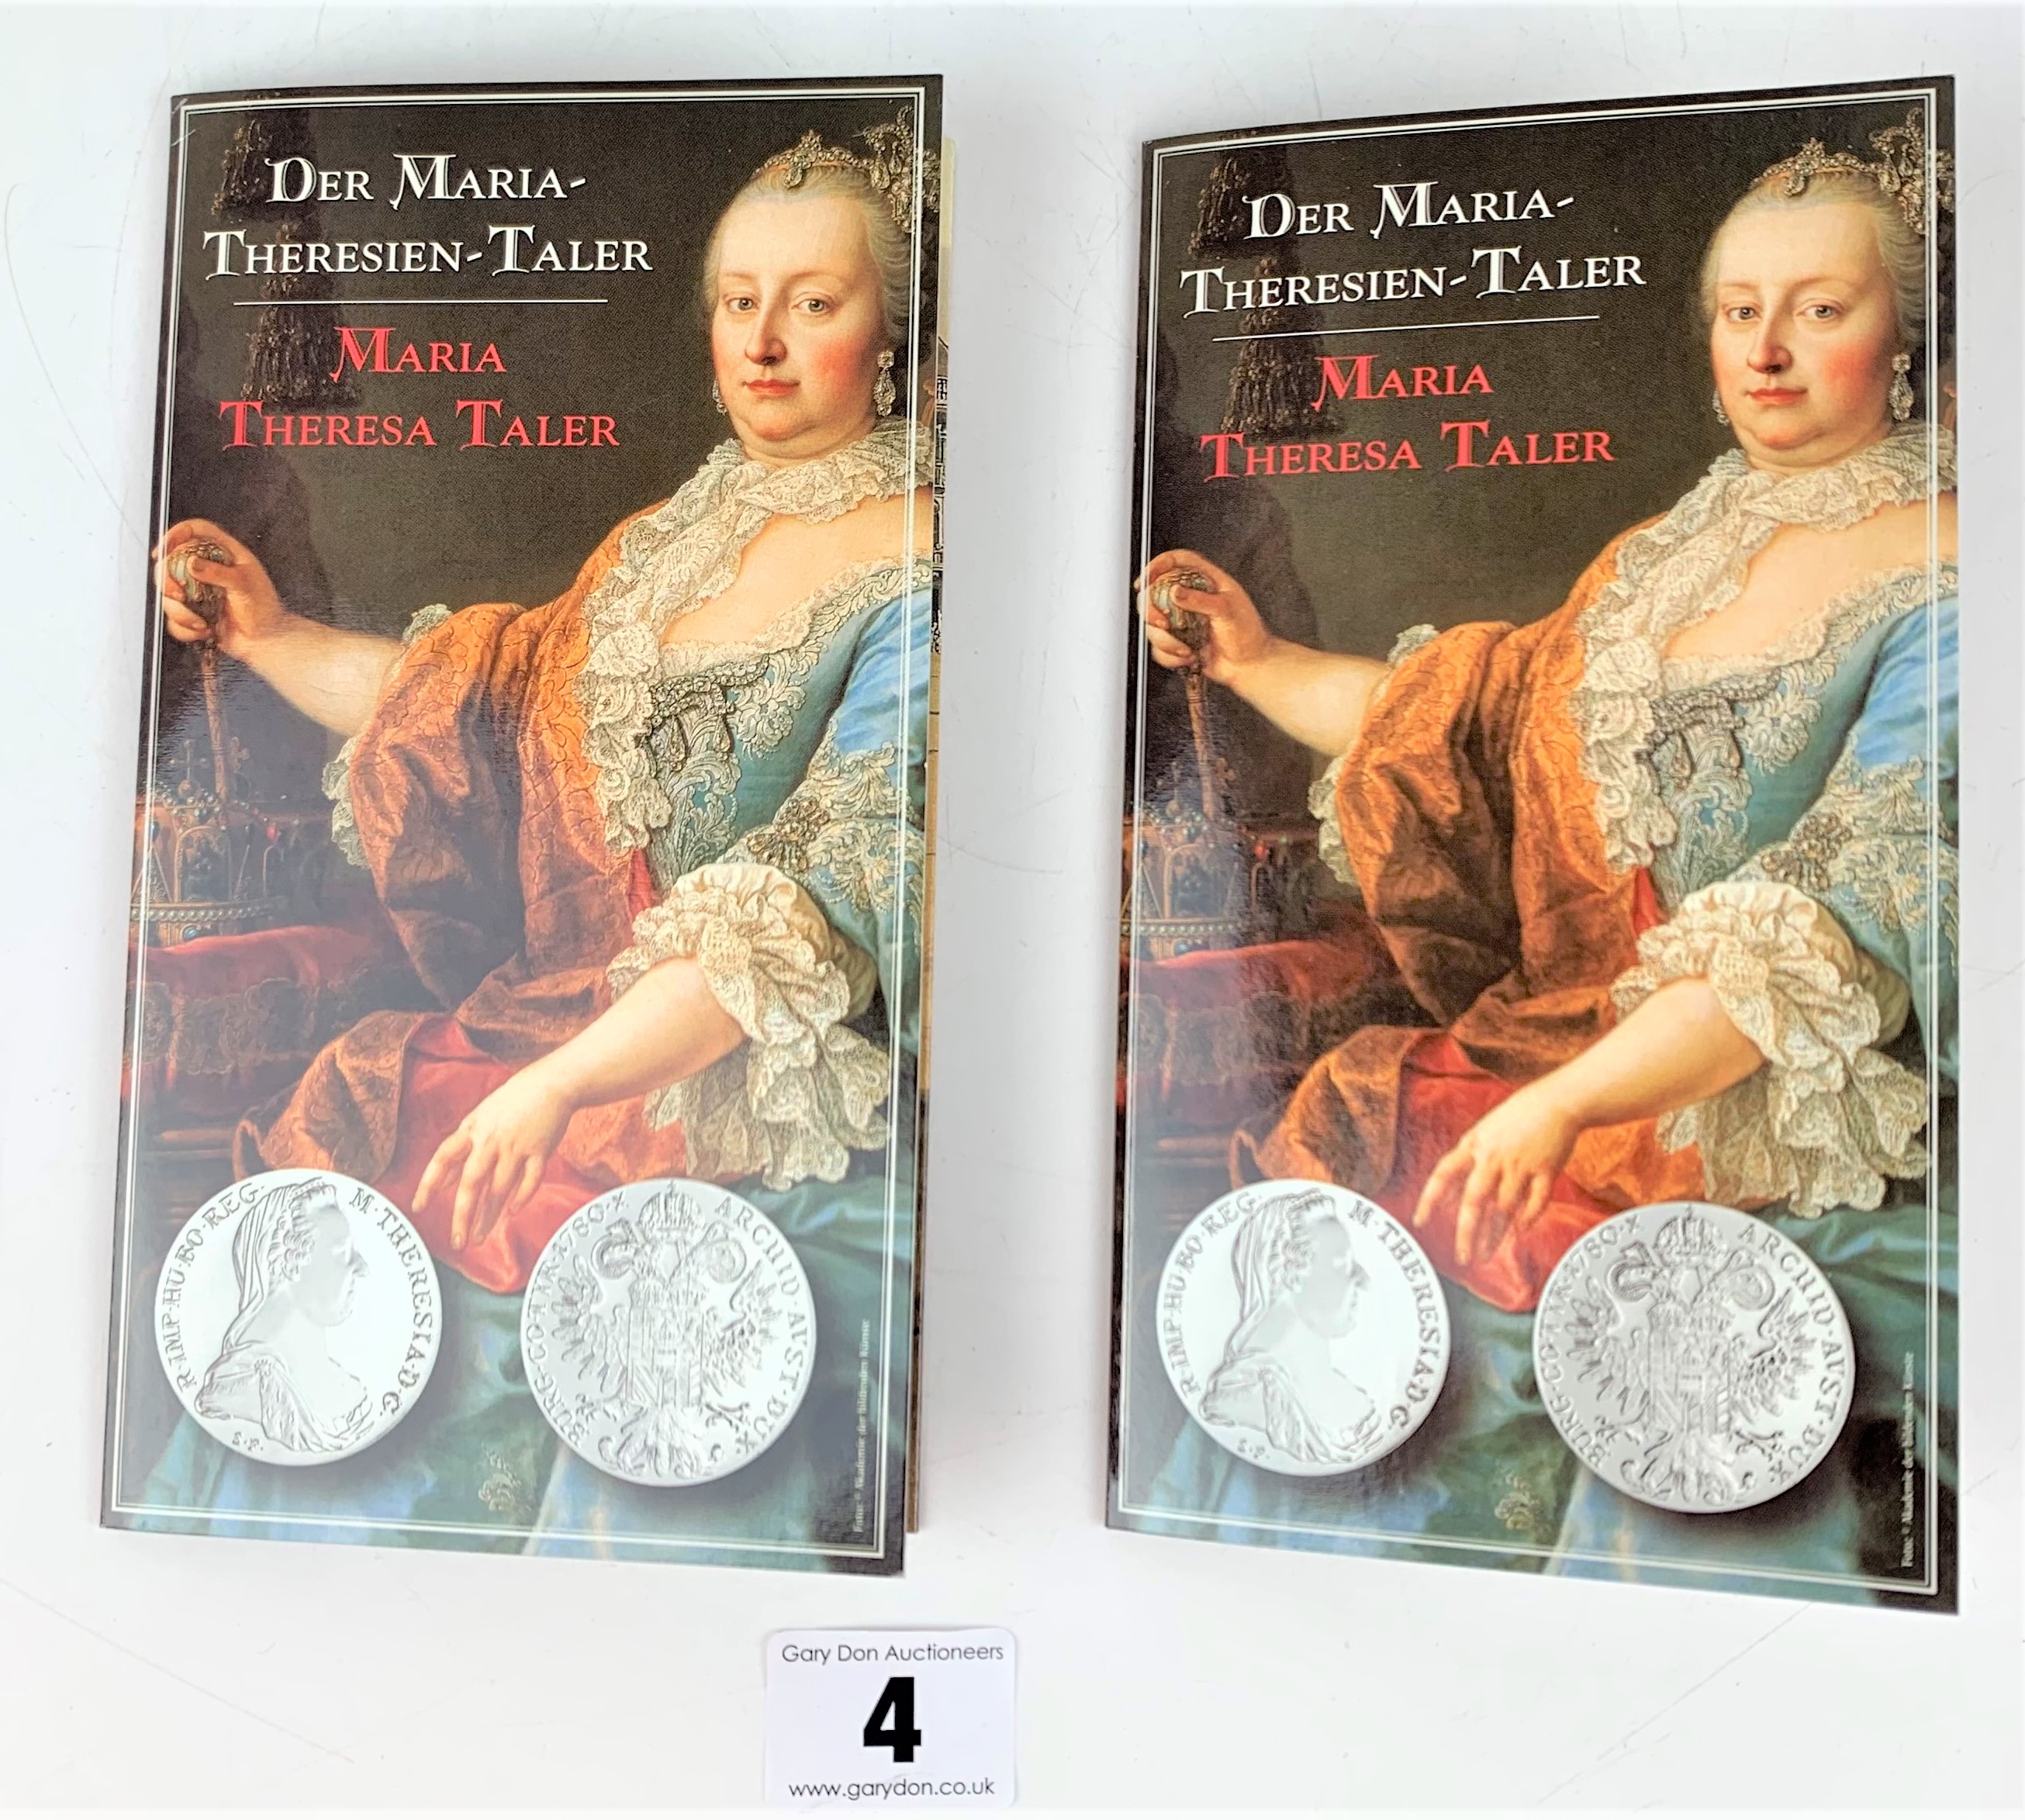 2 Austrian Maria Theresa Taler silver coins